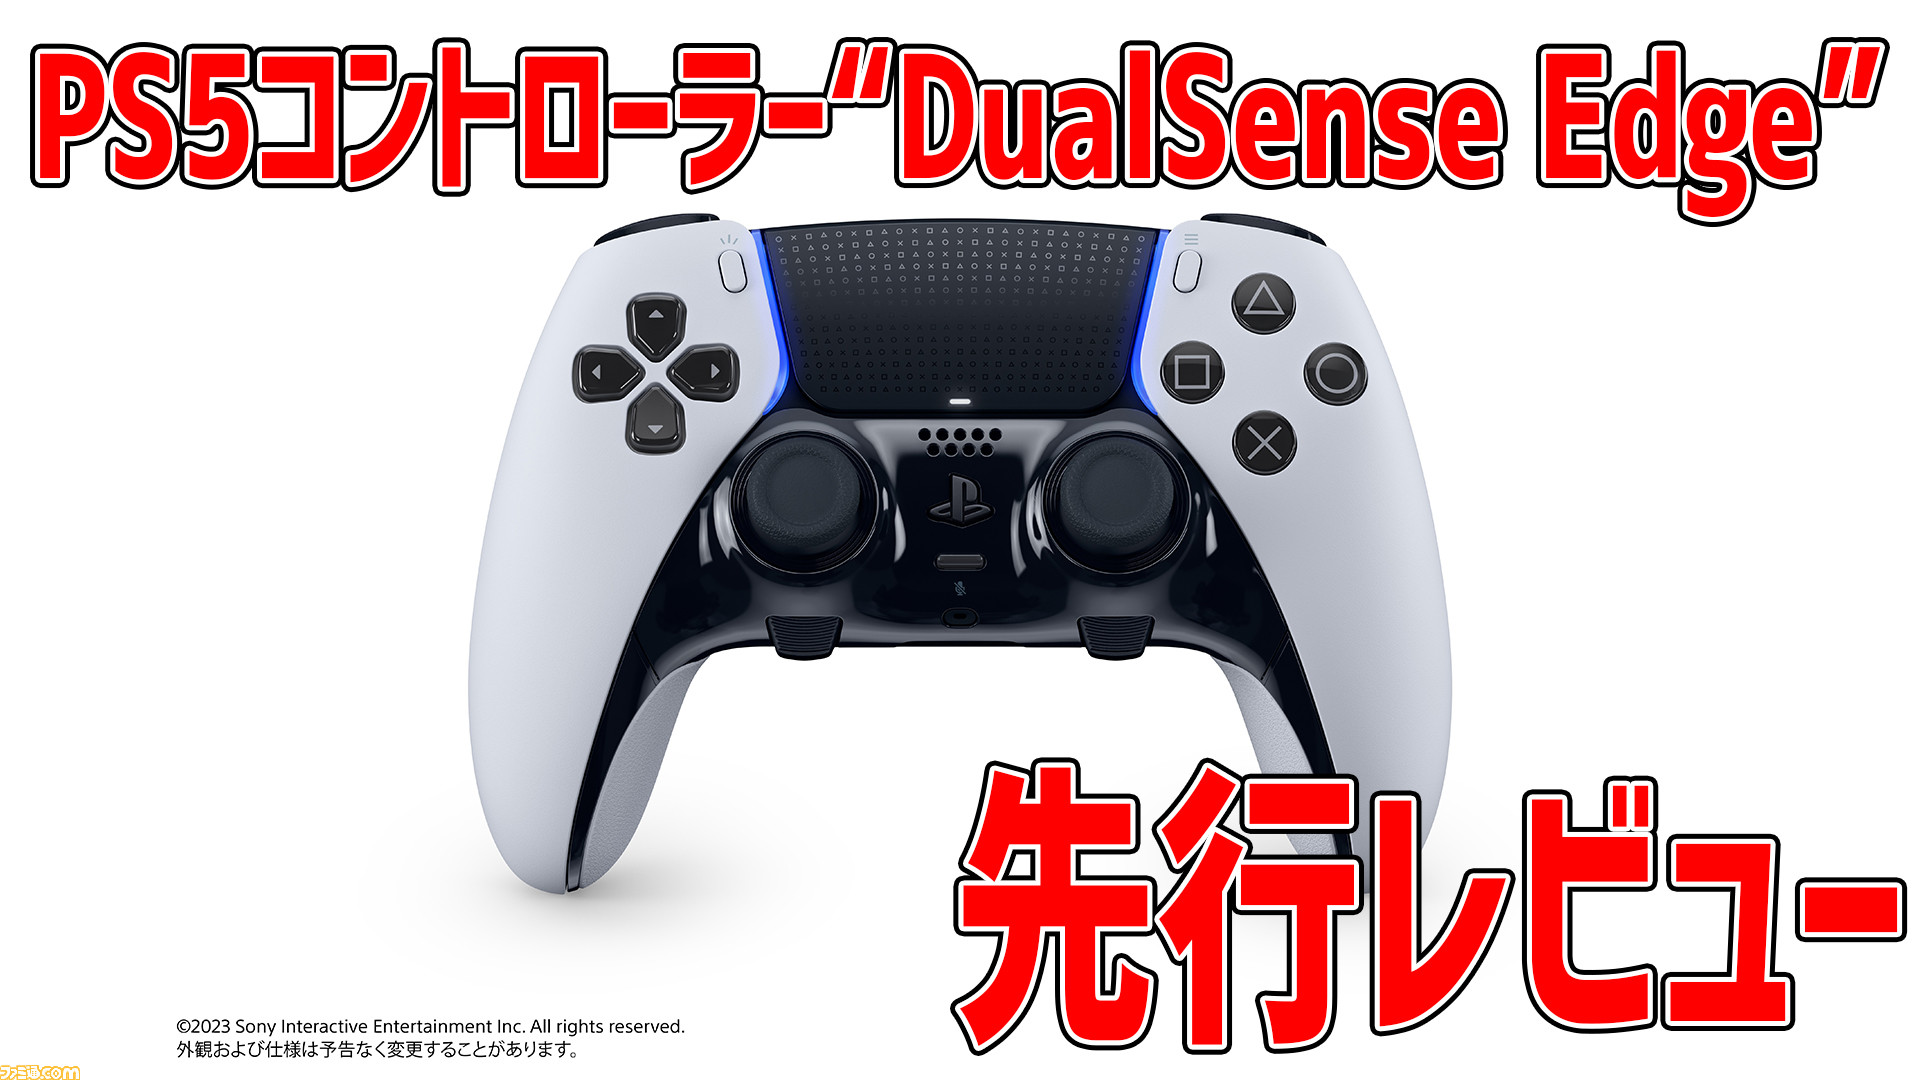 PS5用高性能コントローラー“DualSense Edge”先行レビュー。使い心地や